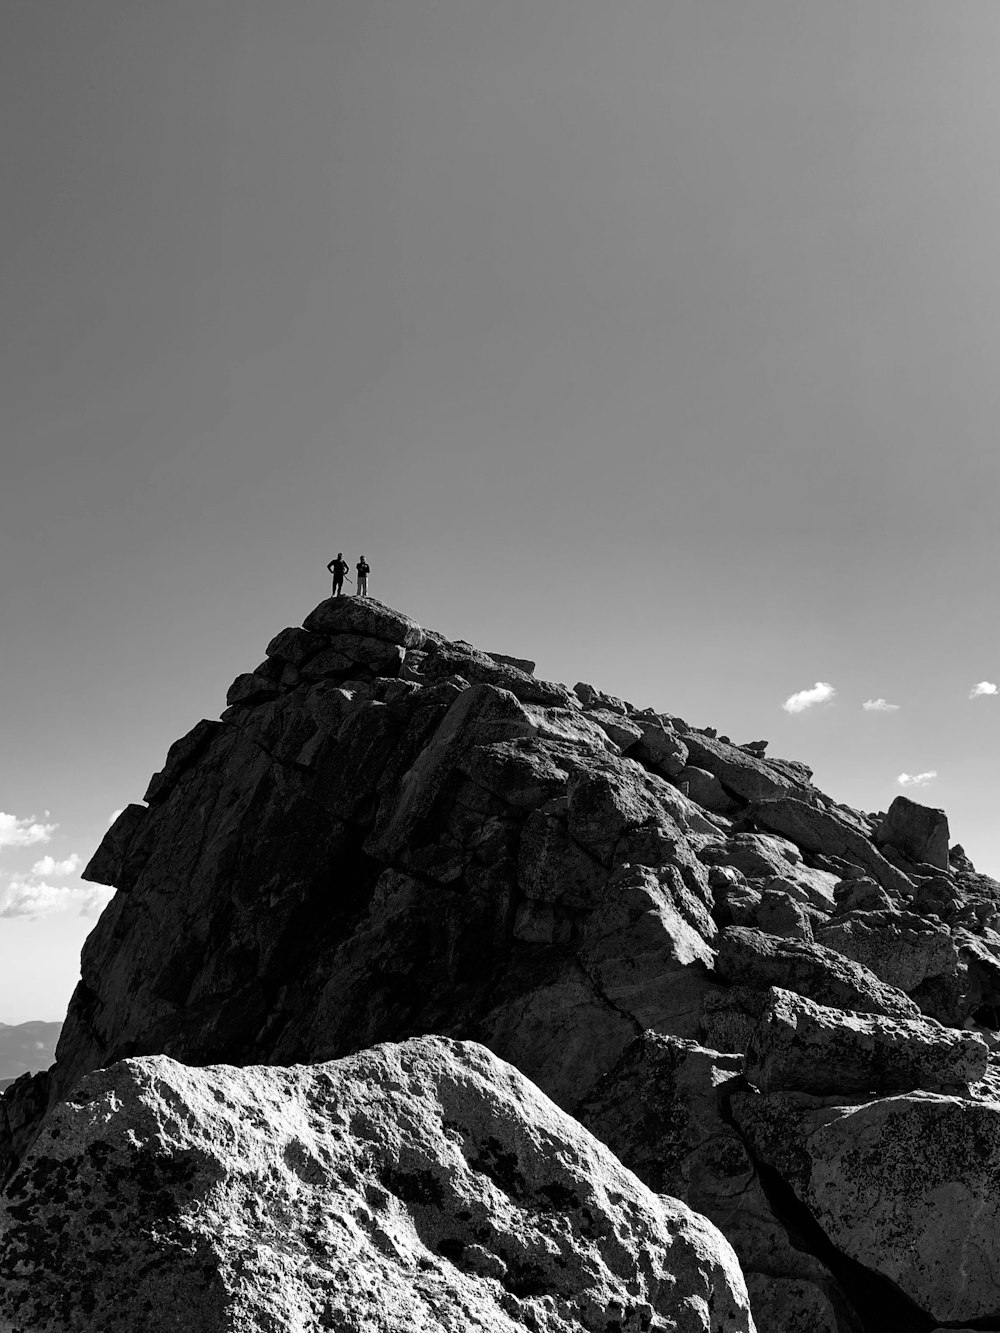 Photo en niveaux de gris d’une personne debout sur une formation rocheuse